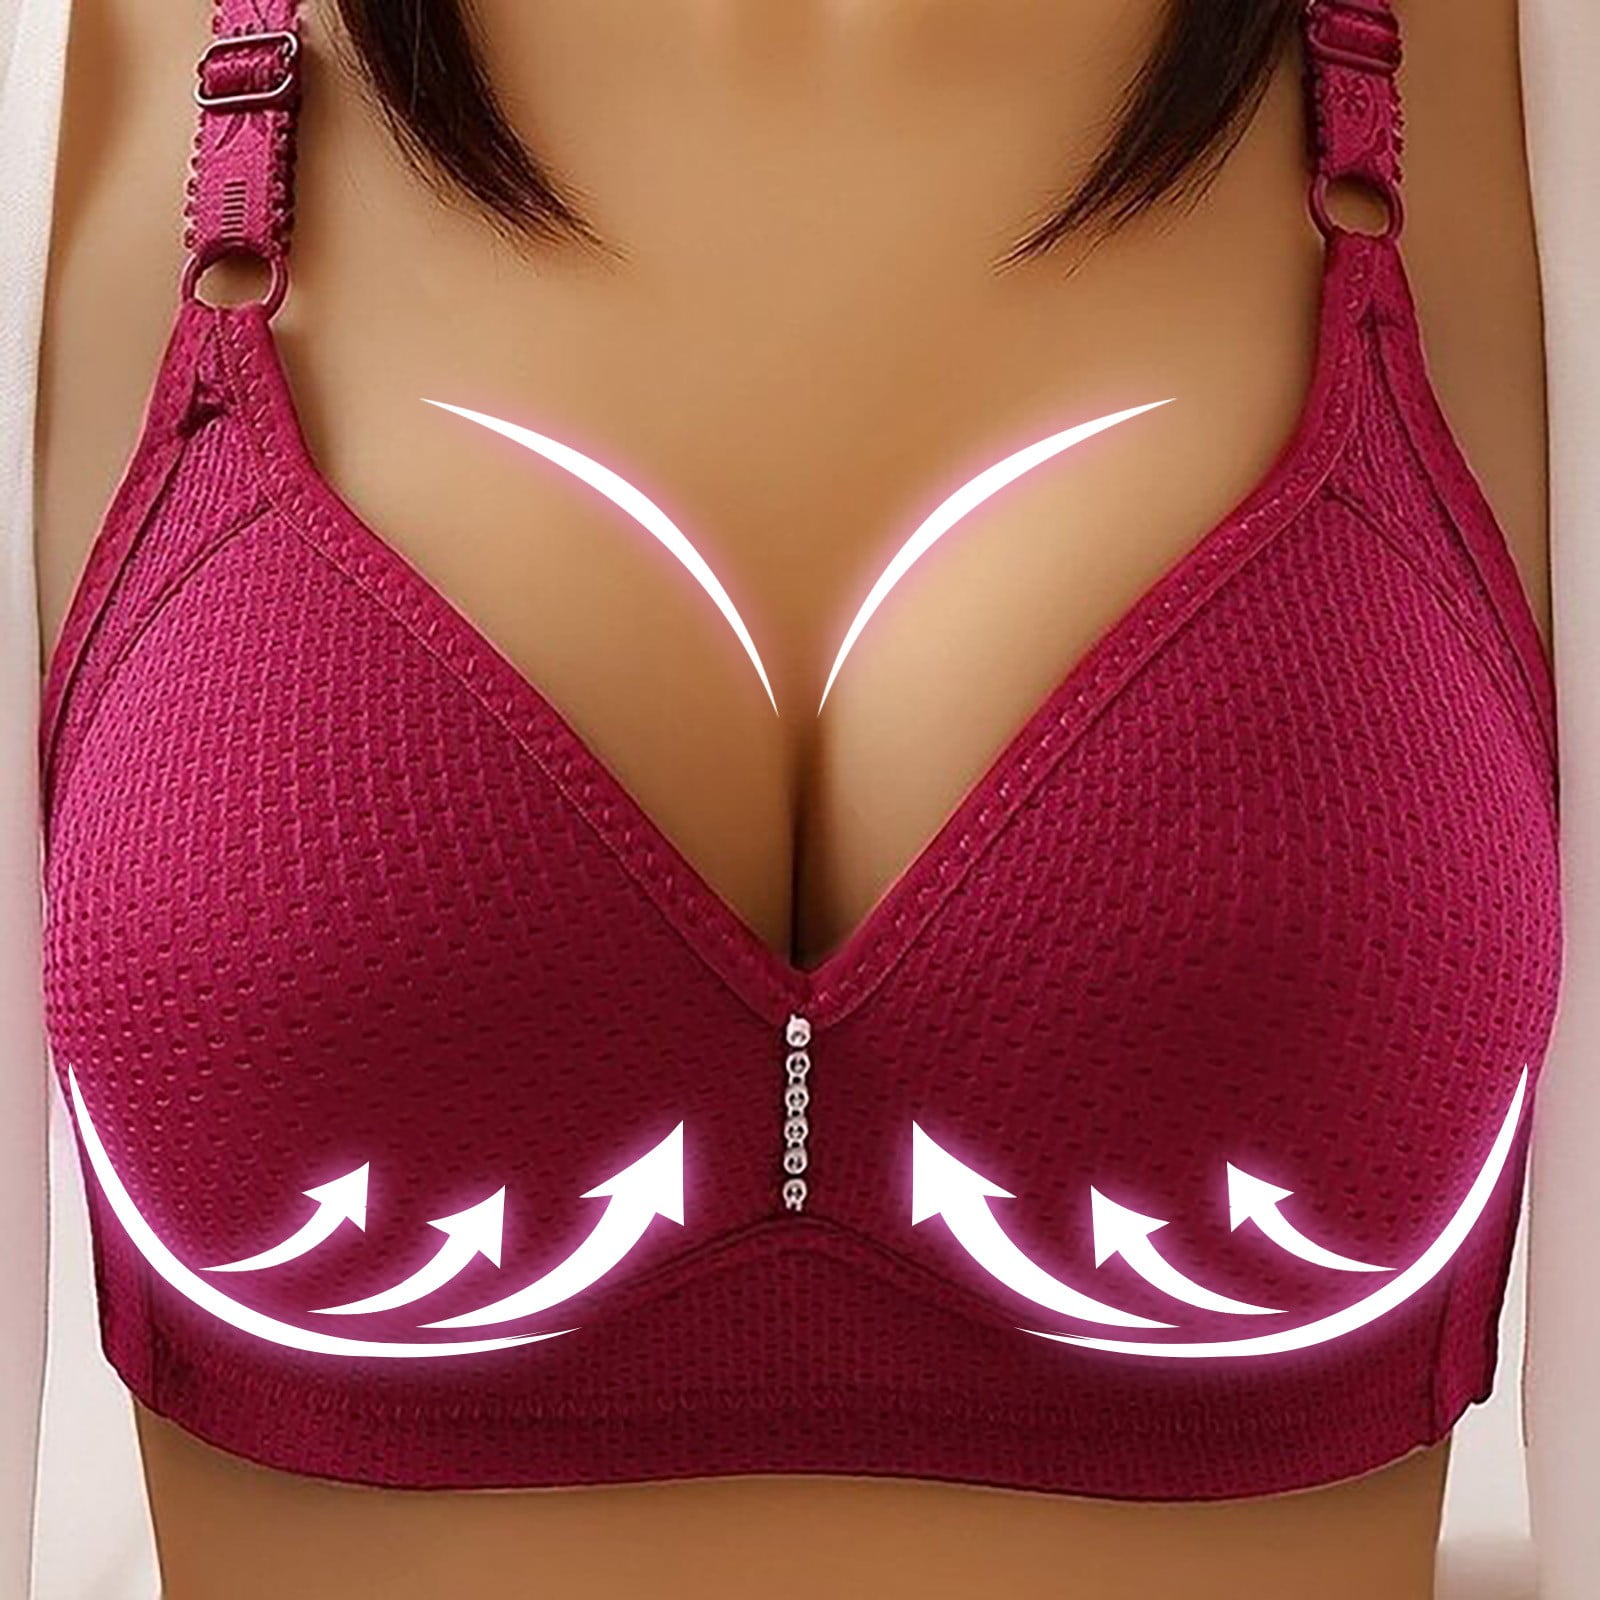 MRULIC bras for women Lace Bra Plus Size Bra Women Underwear Bralette Crop  Top Female Bra Large Tube Top Female Push Up Brassiere Laced Bra Red + XL